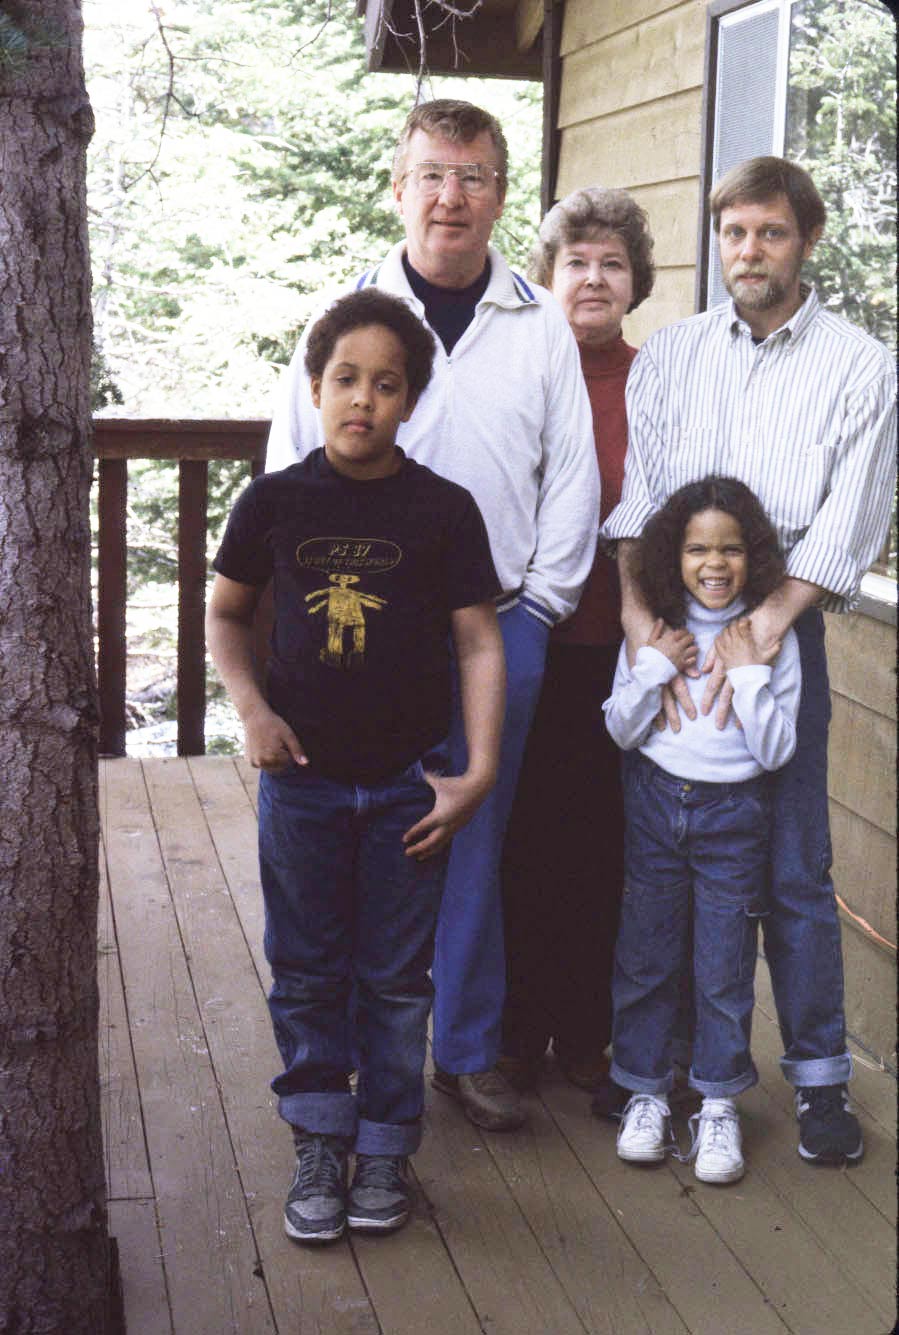 Us at Big Bear 1986